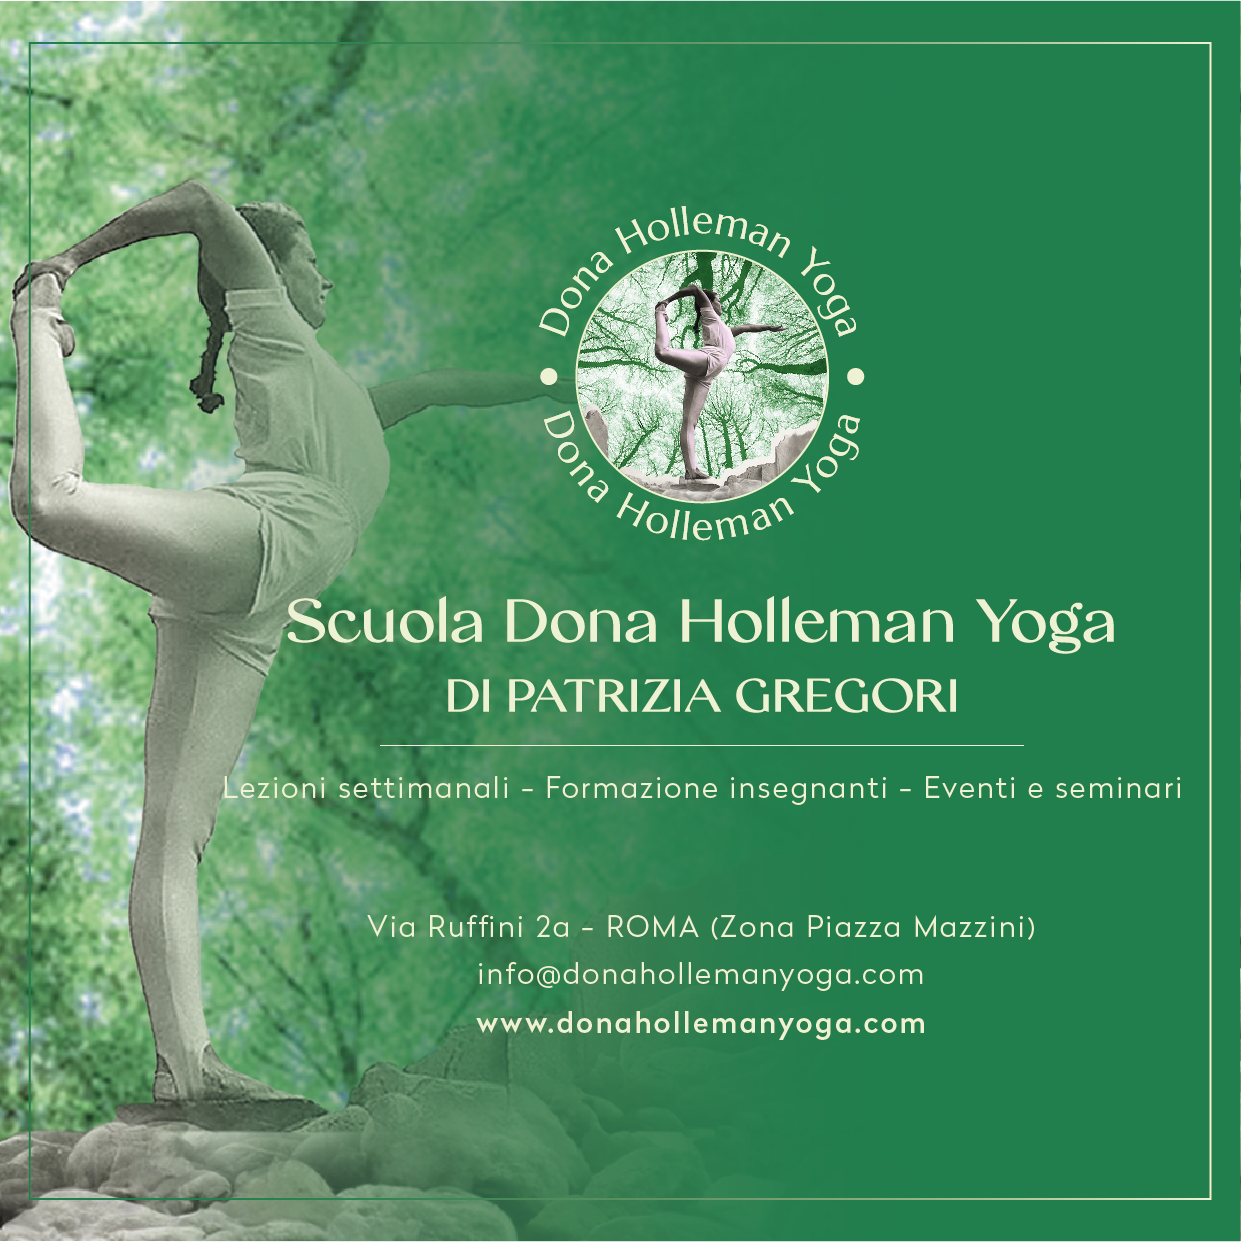 Immagine promozionale Scuola Dona Holleman Yoga